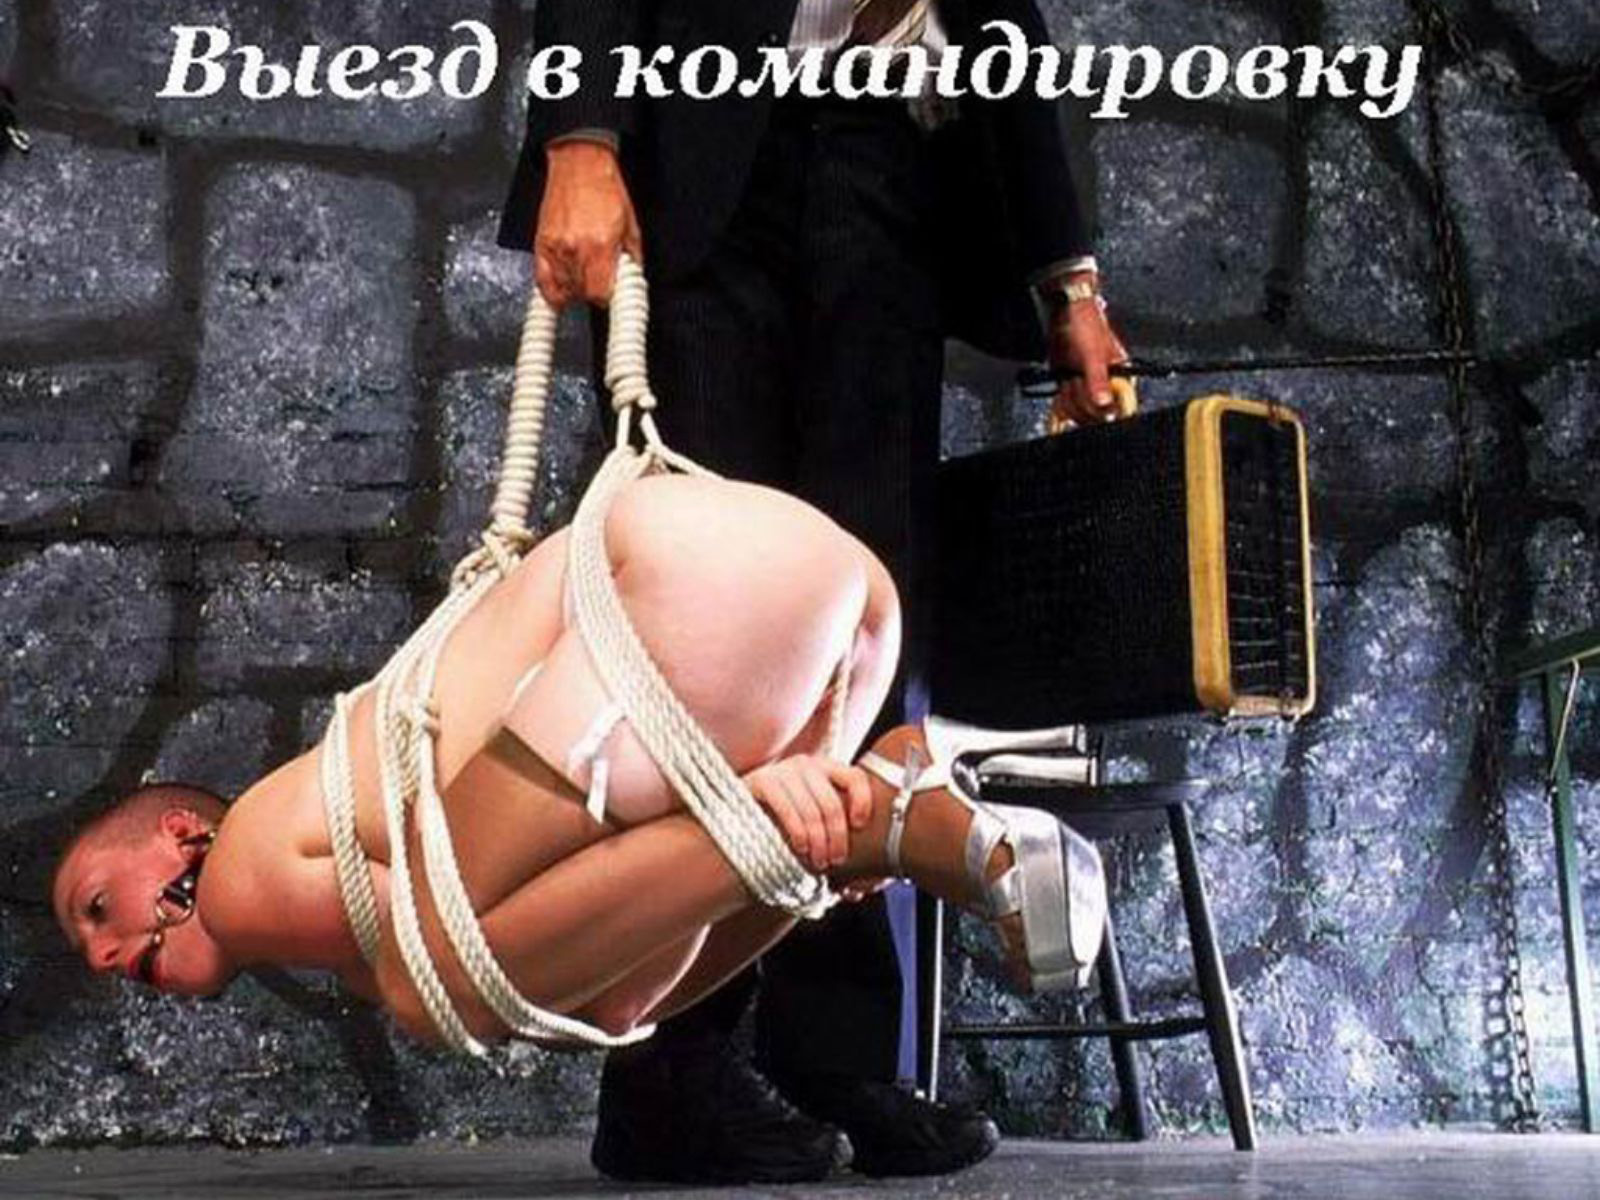 Самые смешные эротические фото рунета